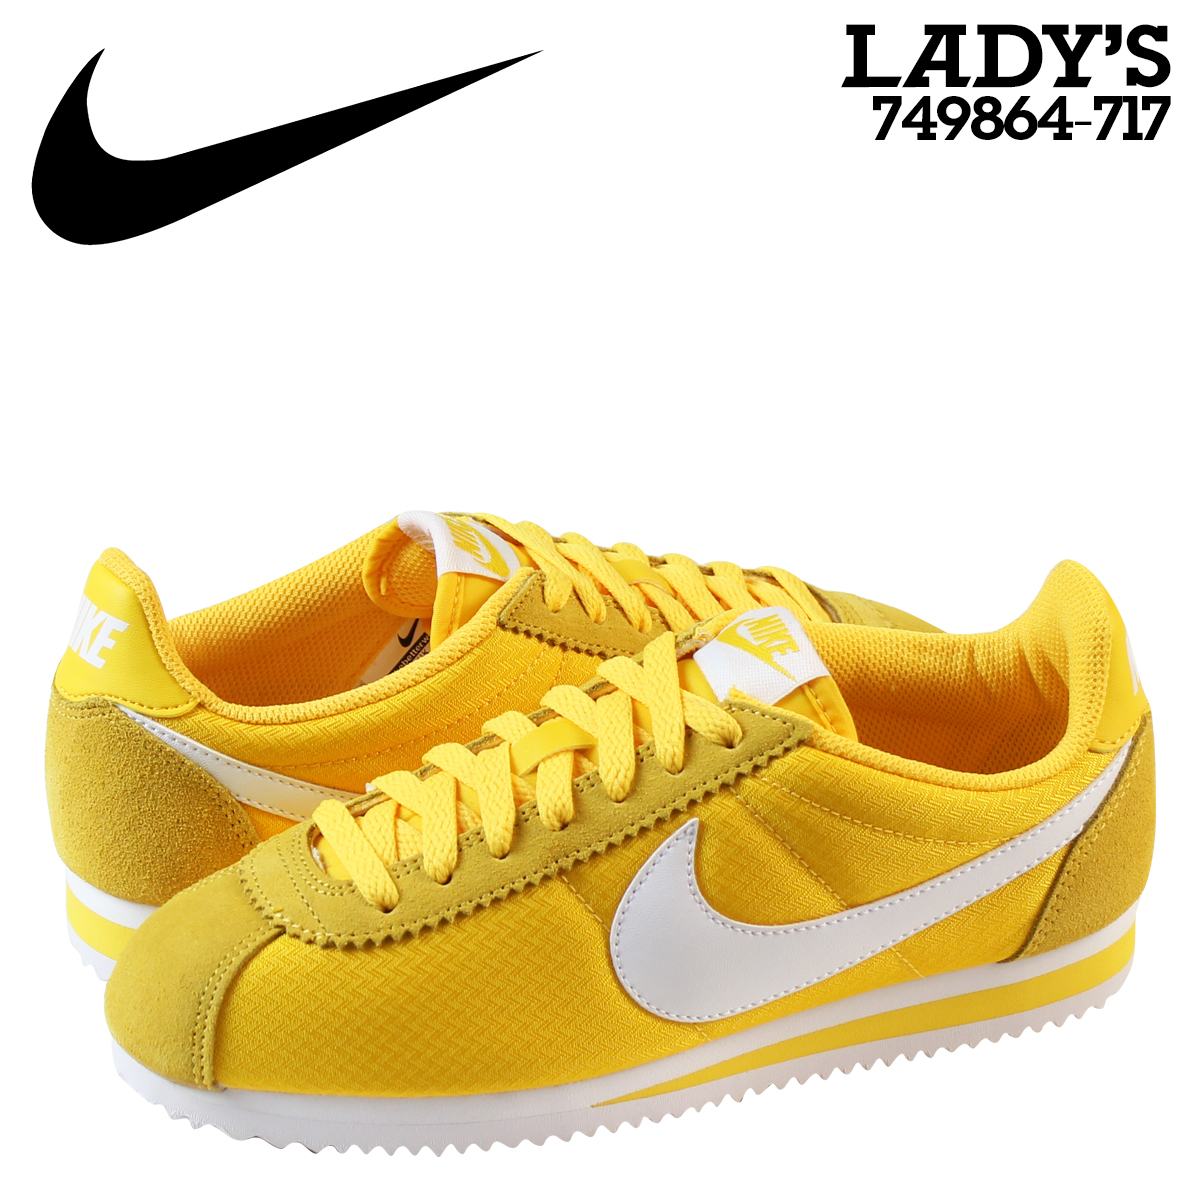 nike womens shoes yellow